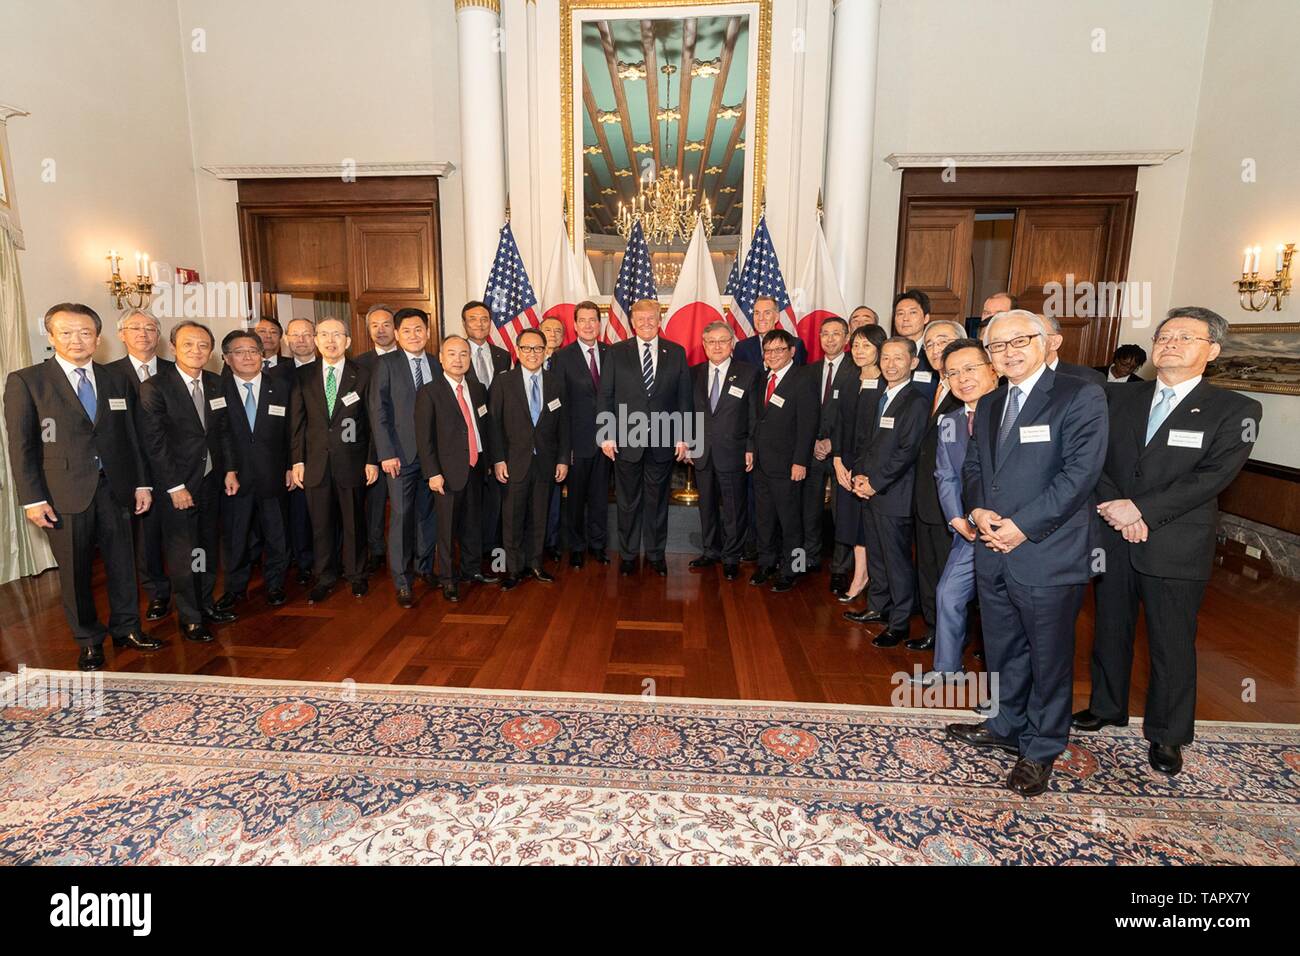 Us-Präsident Donald Trump, Mitte, posiert für ein Gruppenfoto mit US-Botschafter William Hagerty und Japanischen Führungskräfte nach einem Empfang in der Botschaft Wohnsitz Mai 25, 2019 in Tokio, Japan. Stockfoto